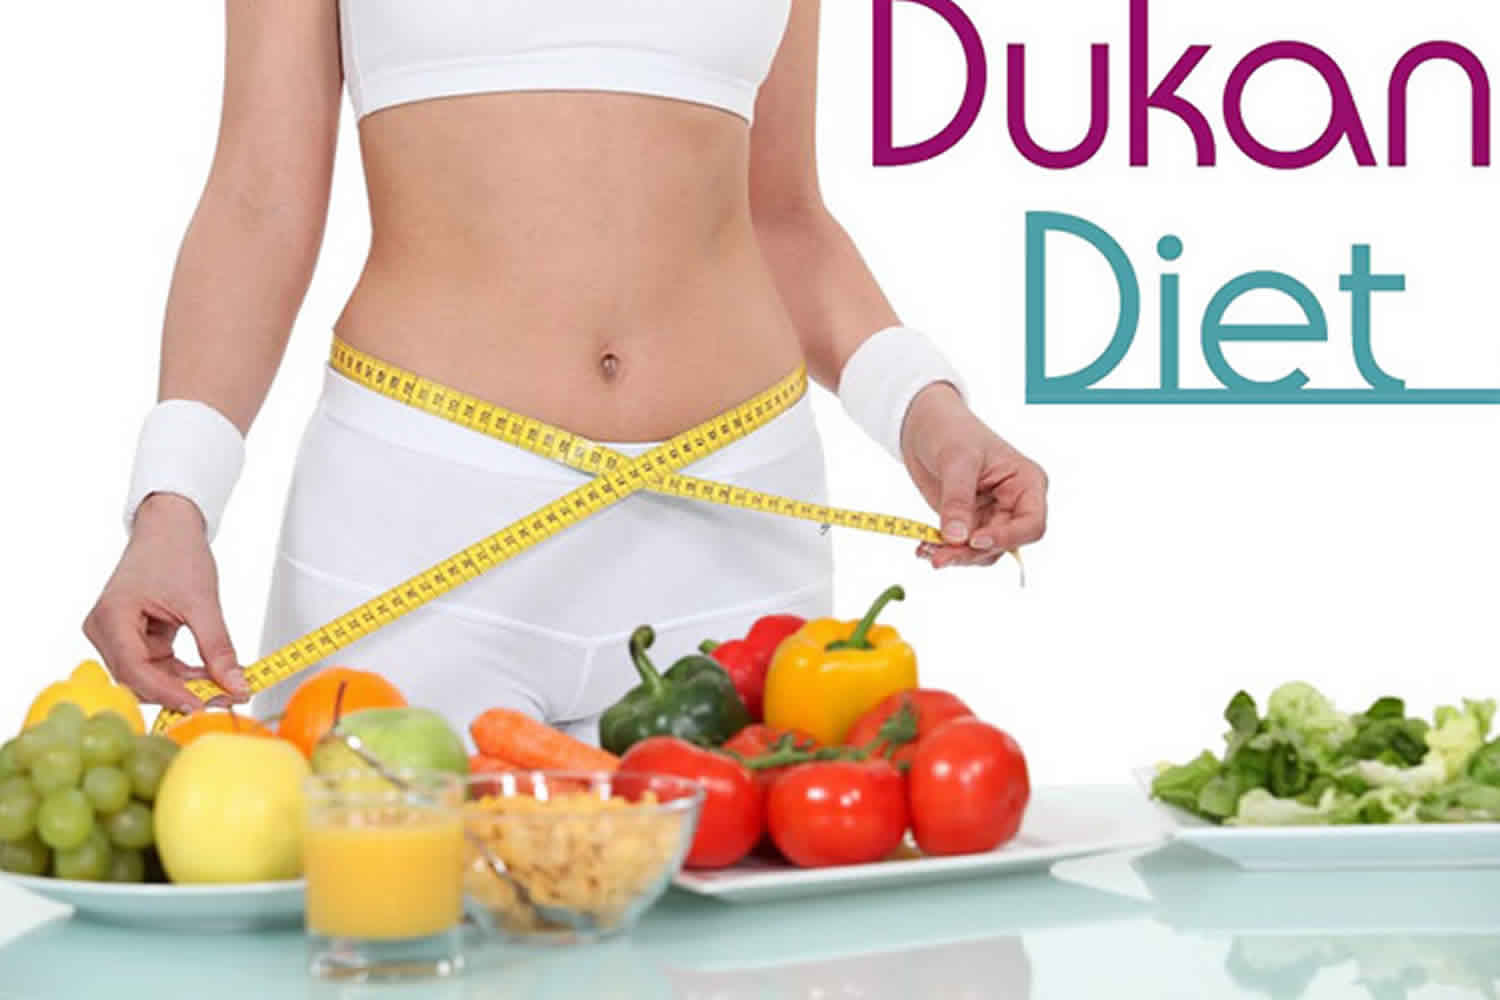 Dieta dukan como começar